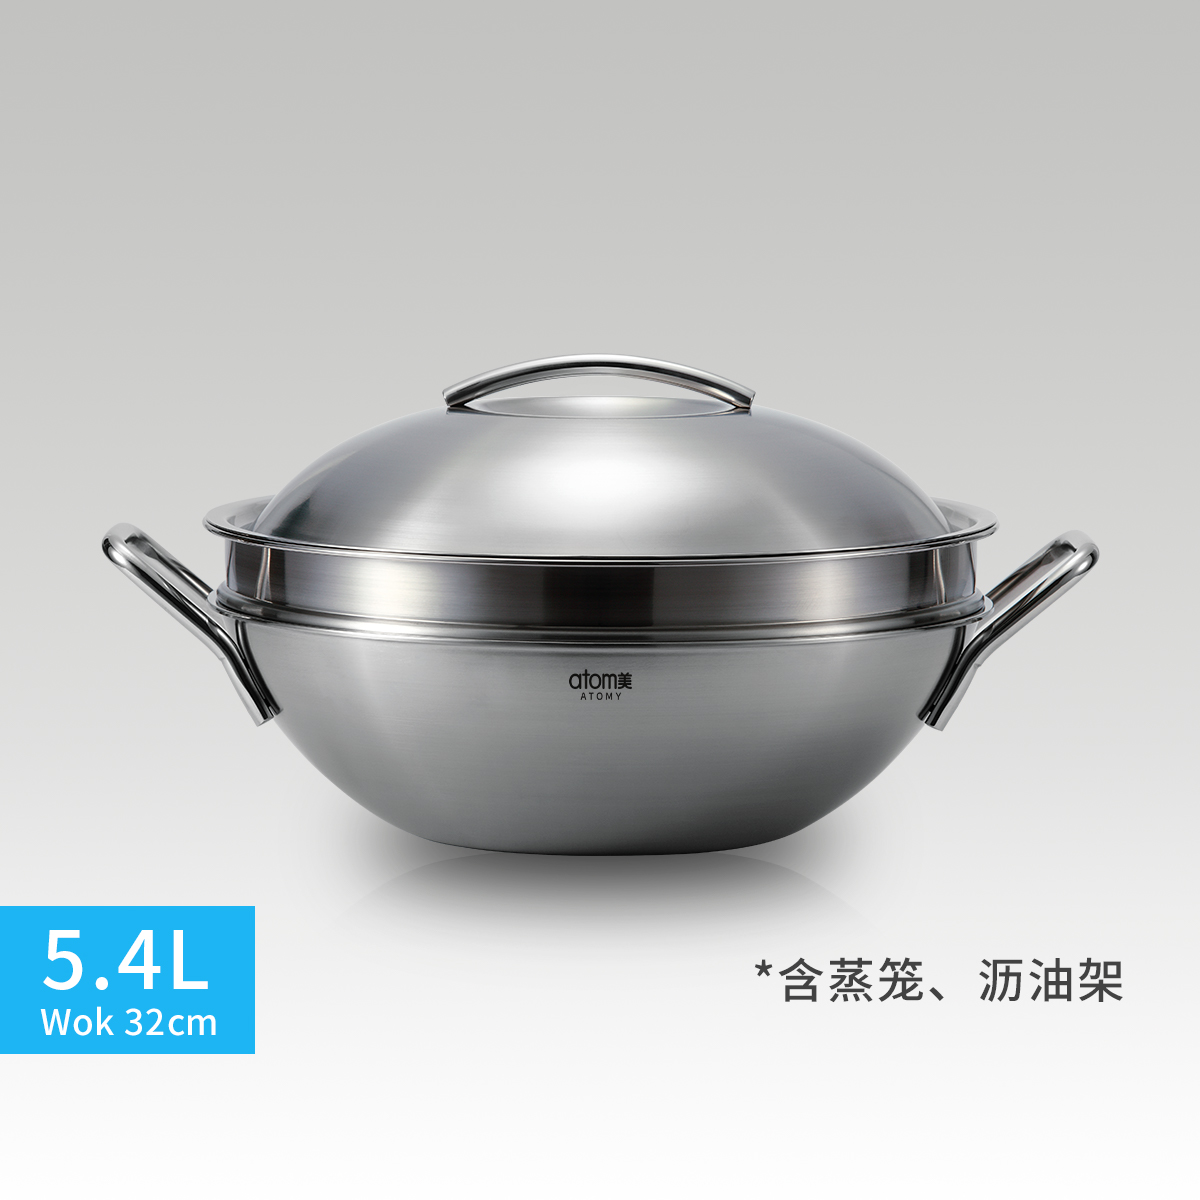 艾多美不锈钢炒锅5.4升